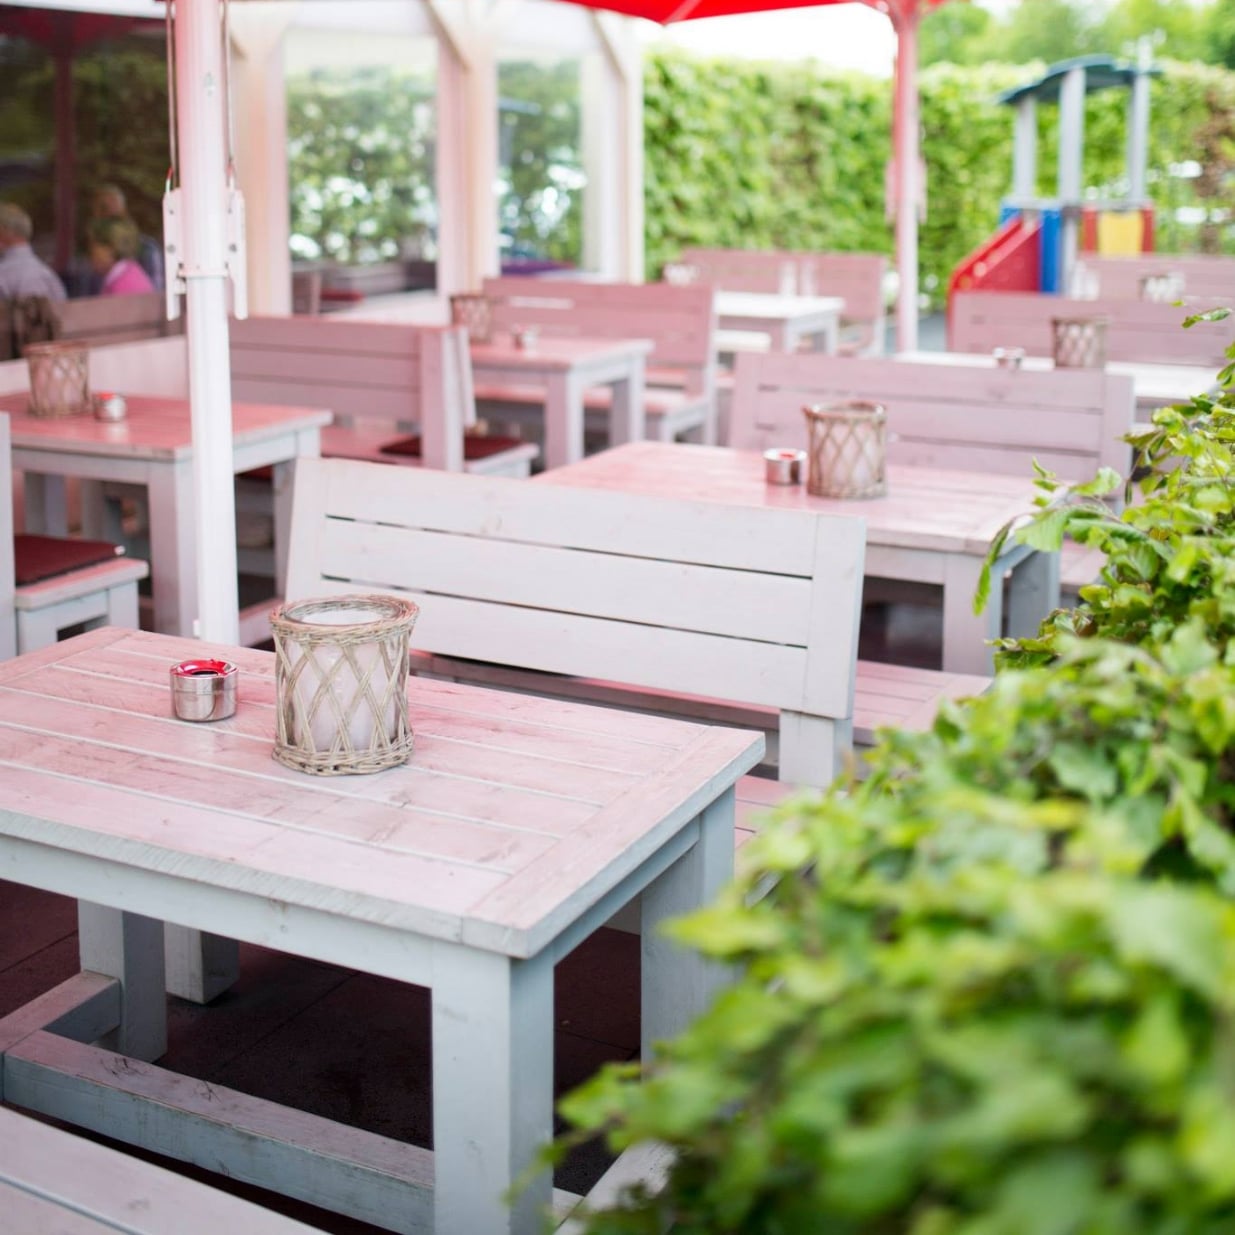 Leere Außenterrasse eines Restaurants mit stilvollen, pastellfarbenen Holztischen und Bänken, dekoriert mit einem windgeschützten Kerzenglas und einem kleinen Aschenbecher, umgeben von grüner Vegetation und einem Blick auf einen Spielplatz im Hintergrund.